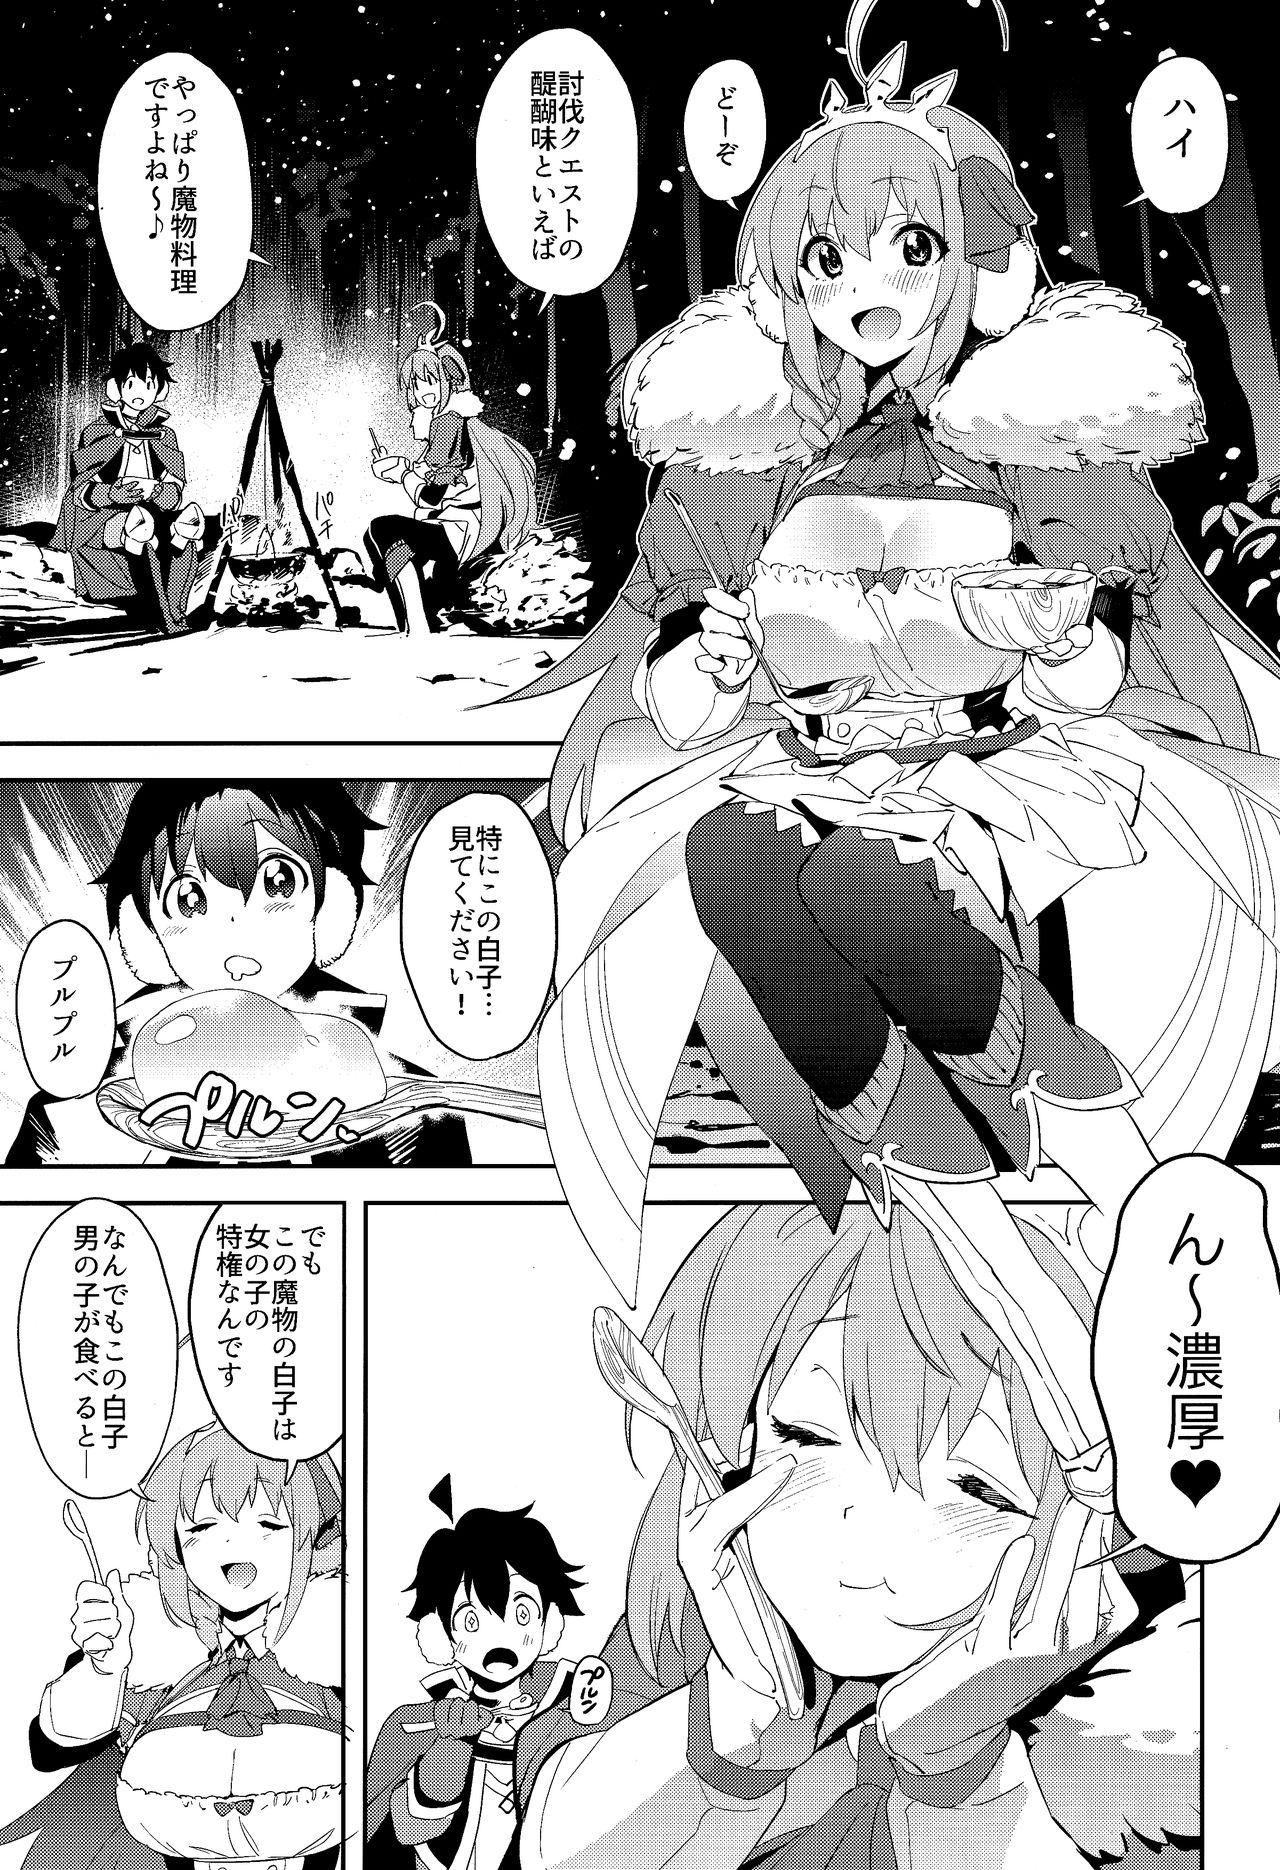  Pecorine to Shota Kishi-kun - Princess connect Trap - Page 2